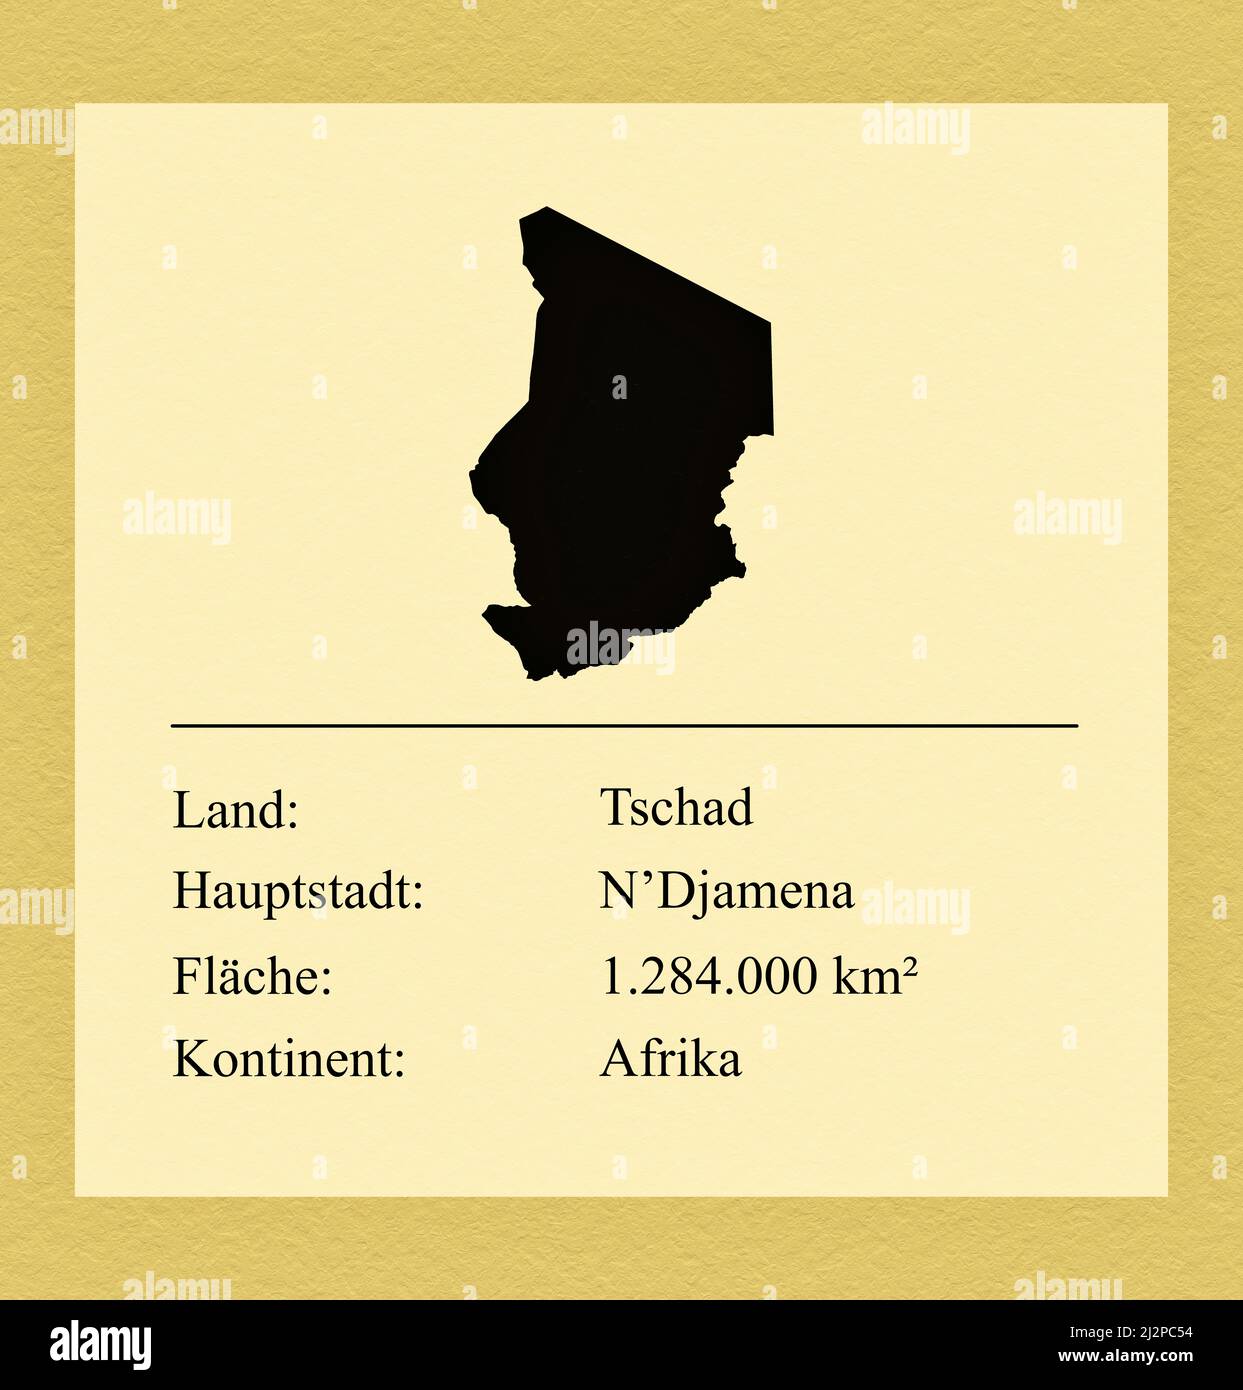 Umrisse des Landes Tschad, darunter ein kleiner Steckbrief mit Ländernamen, Hauptstadt, Fläche und Kontinent Stock Photo